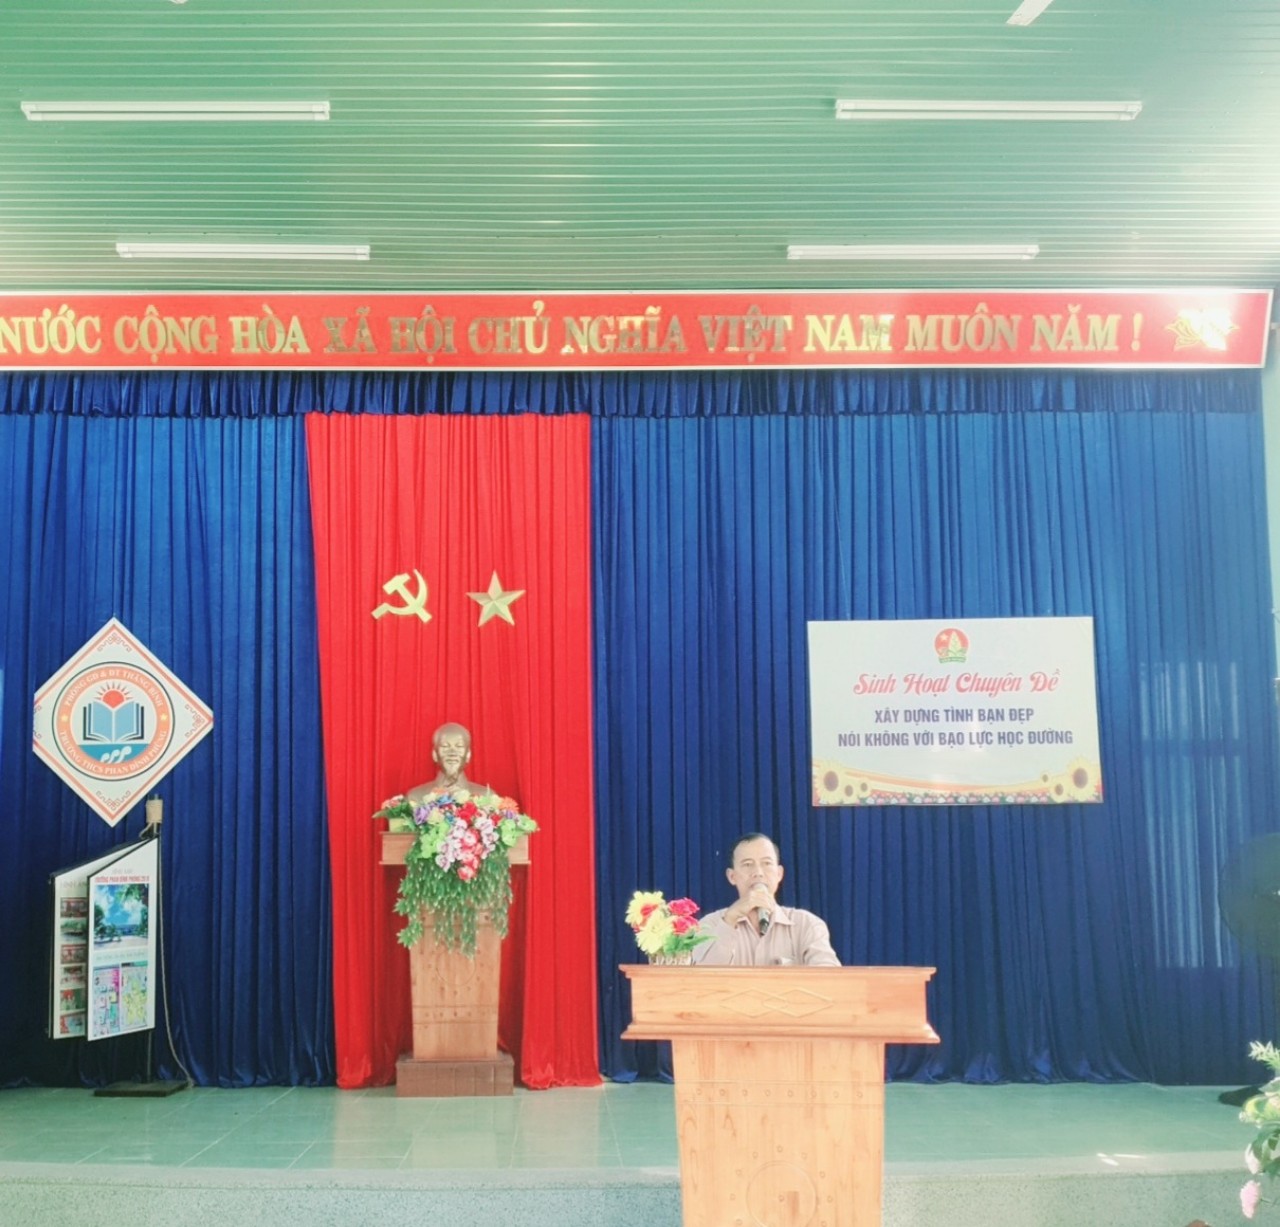 Liên đội trường THCS Phan Đình Phùng tổ chức sinh hoạt chuyên đề "Xây dựng tình bạn đẹp, nói không với bạo lực học đường""